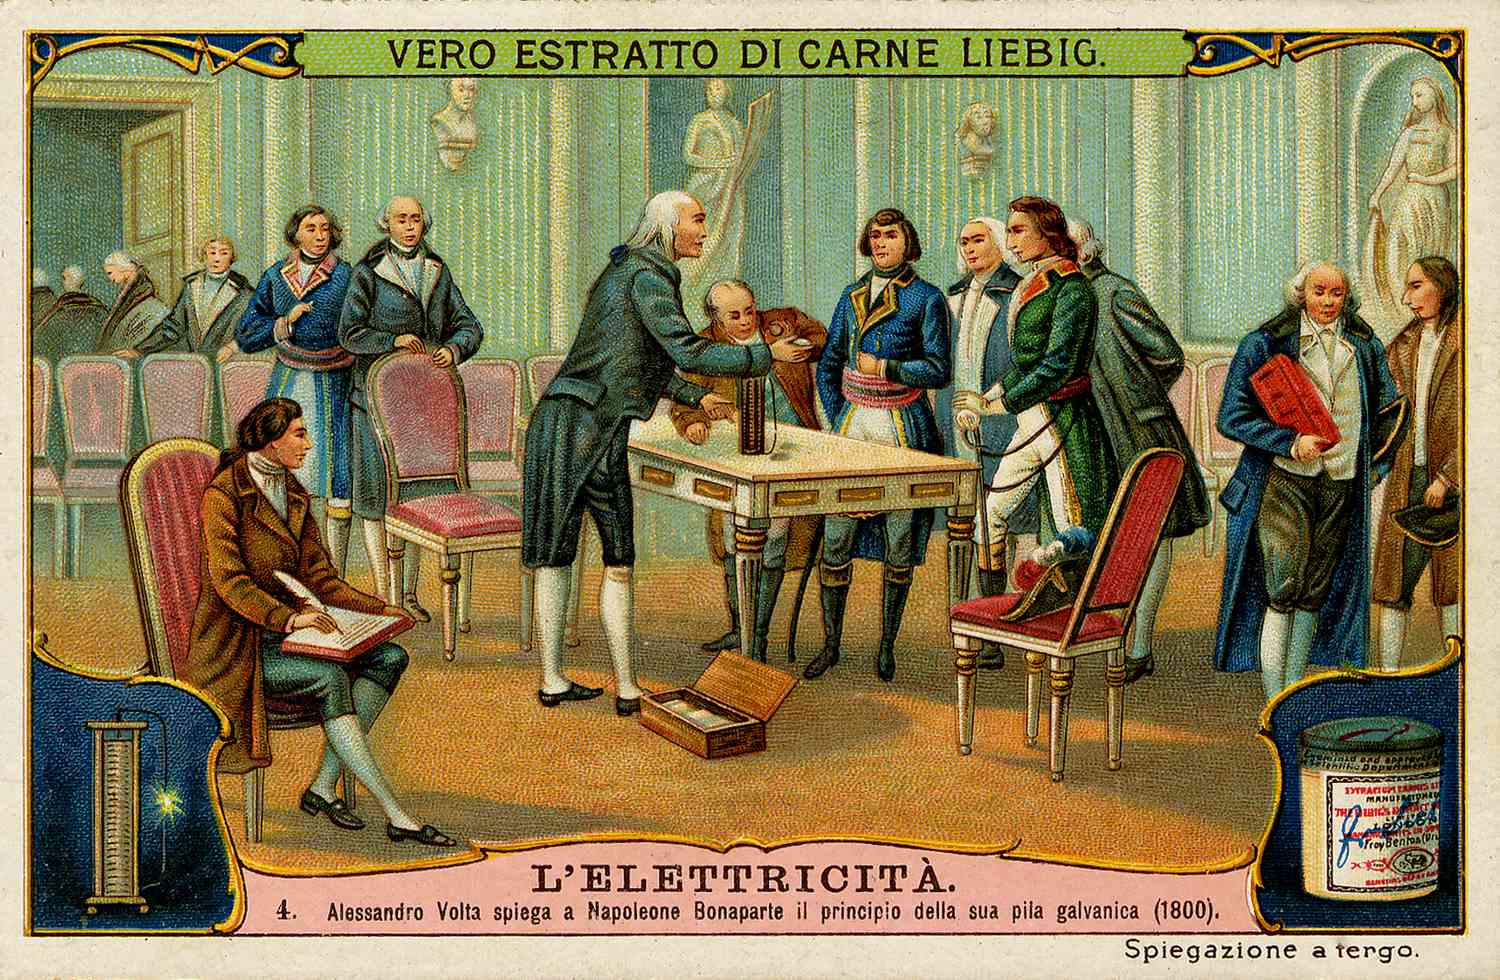 mort du physicien italien Volta, inventeur de la première pile électrique